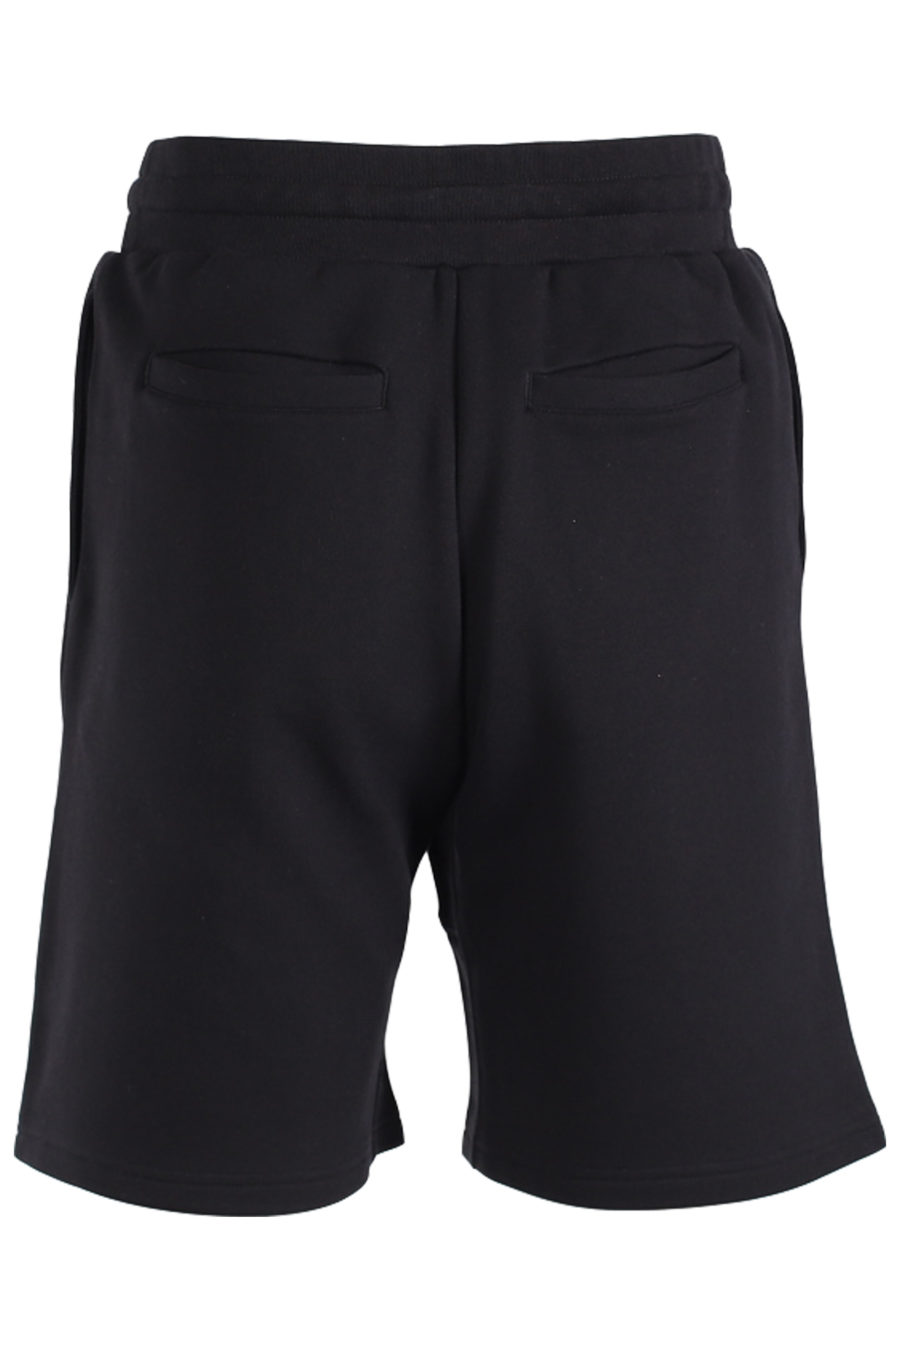 Black shorts white logo front - IMG 1418